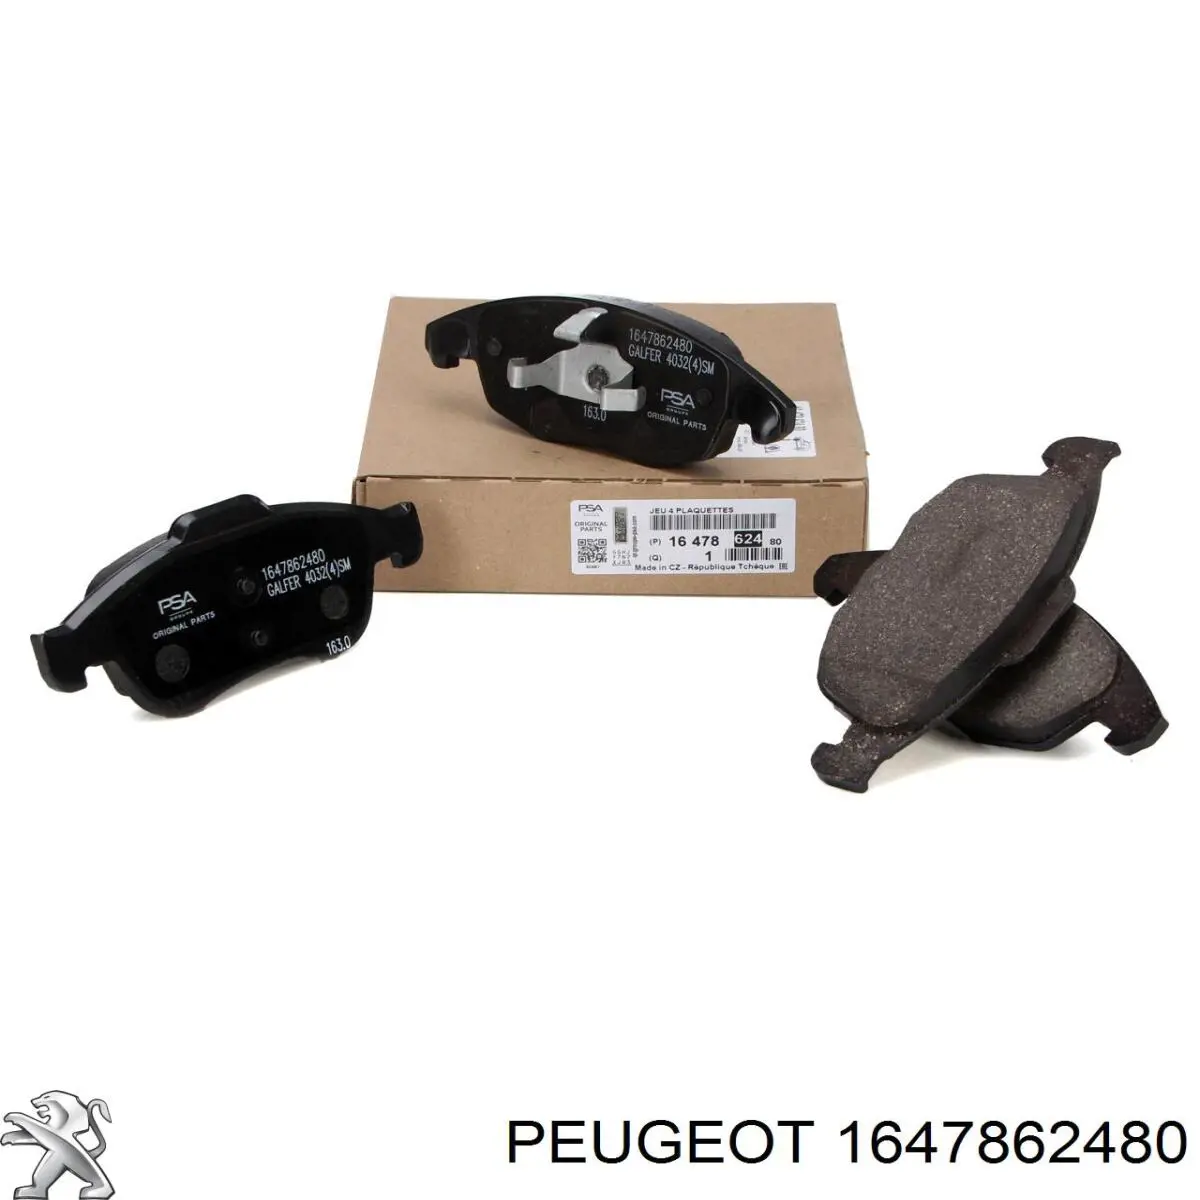 1647862480 Peugeot/Citroen pastillas de freno delanteras